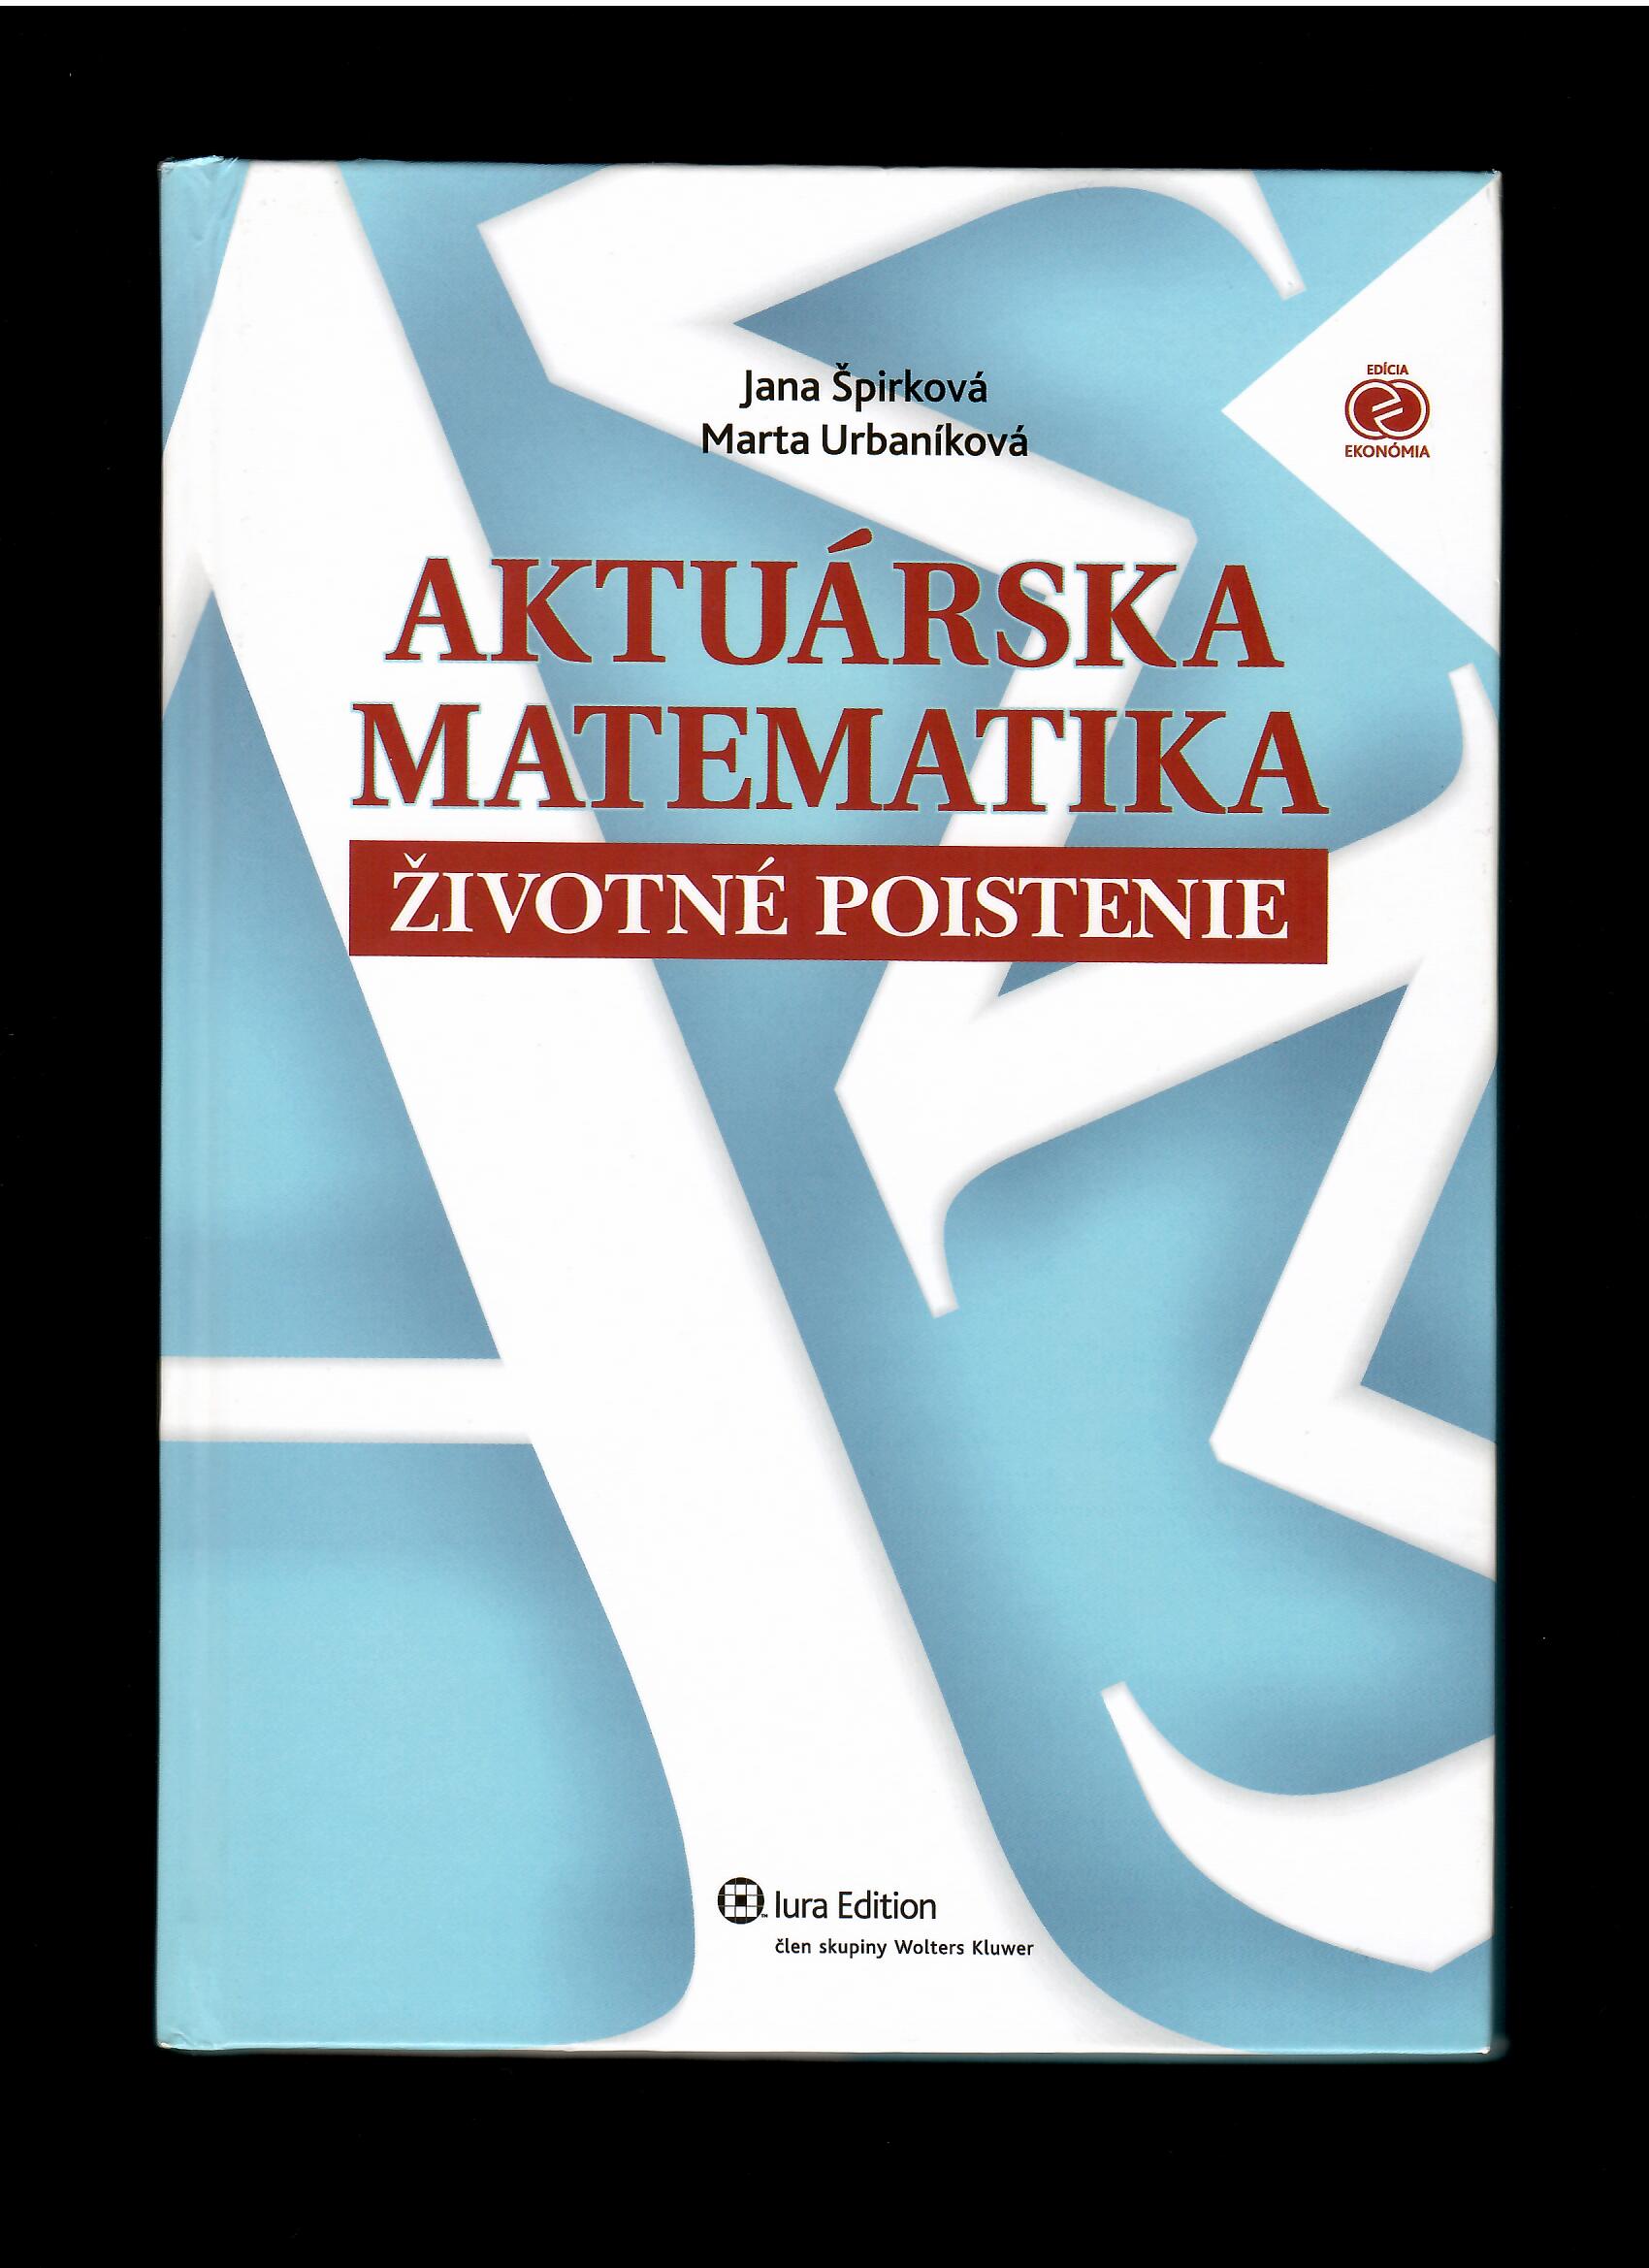 Jana Špirková, Marta Urbaníková: Aktuárska matematika. Životné poistenie